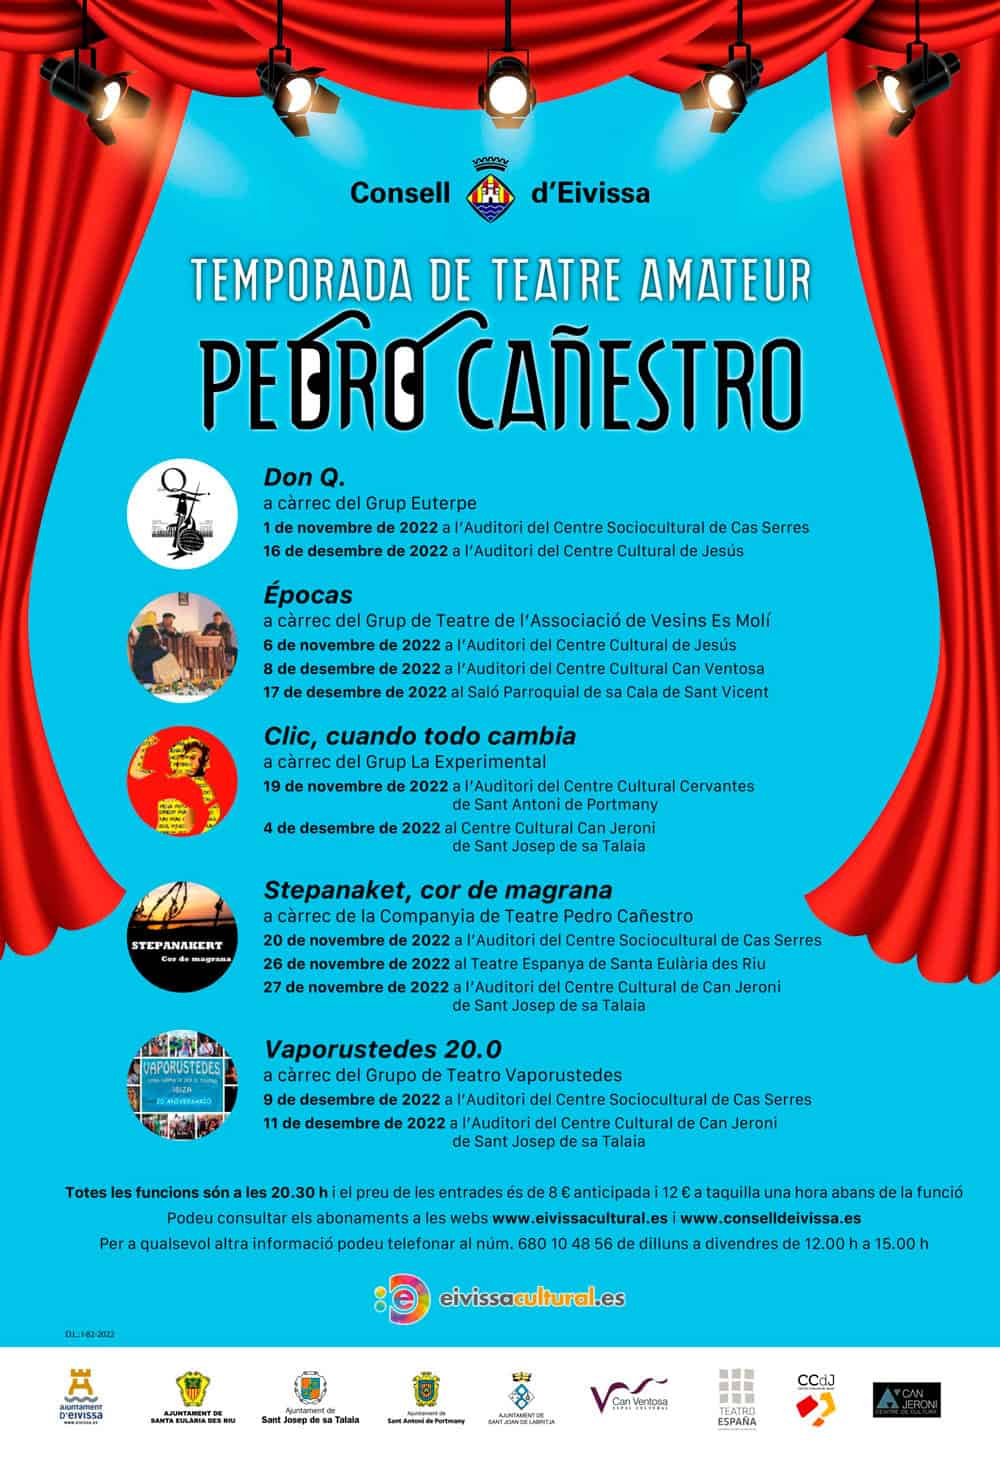 stagione-teatro-amatoriale-pedro-canestro-ibiza-2022-welcometoibiza